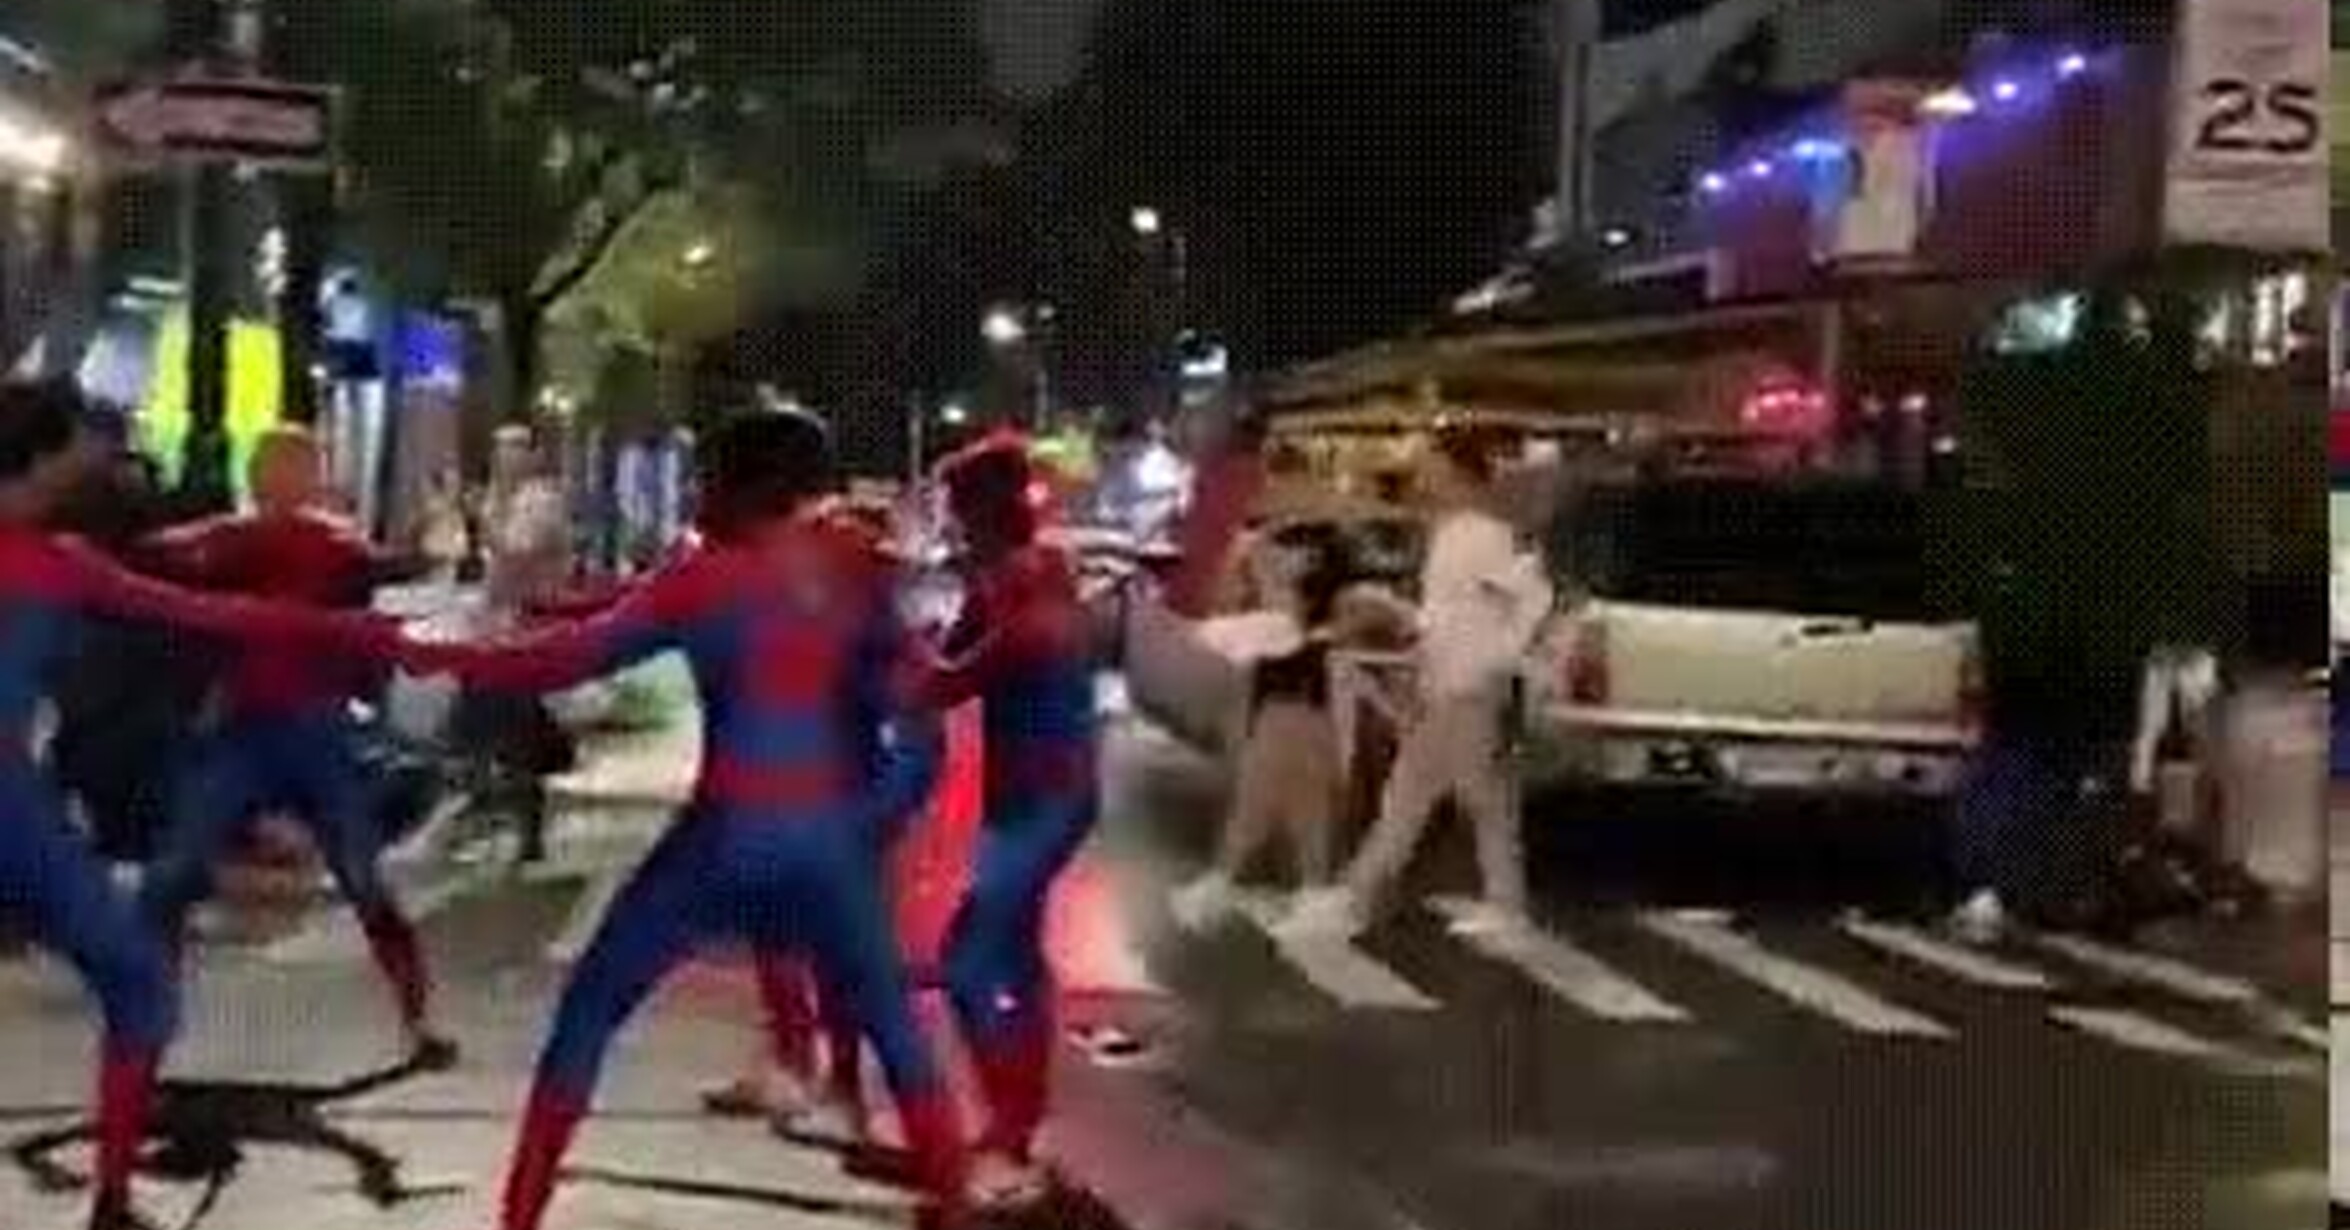 Vaya GIF! / Han recreado el meme de Spider-man en la calle